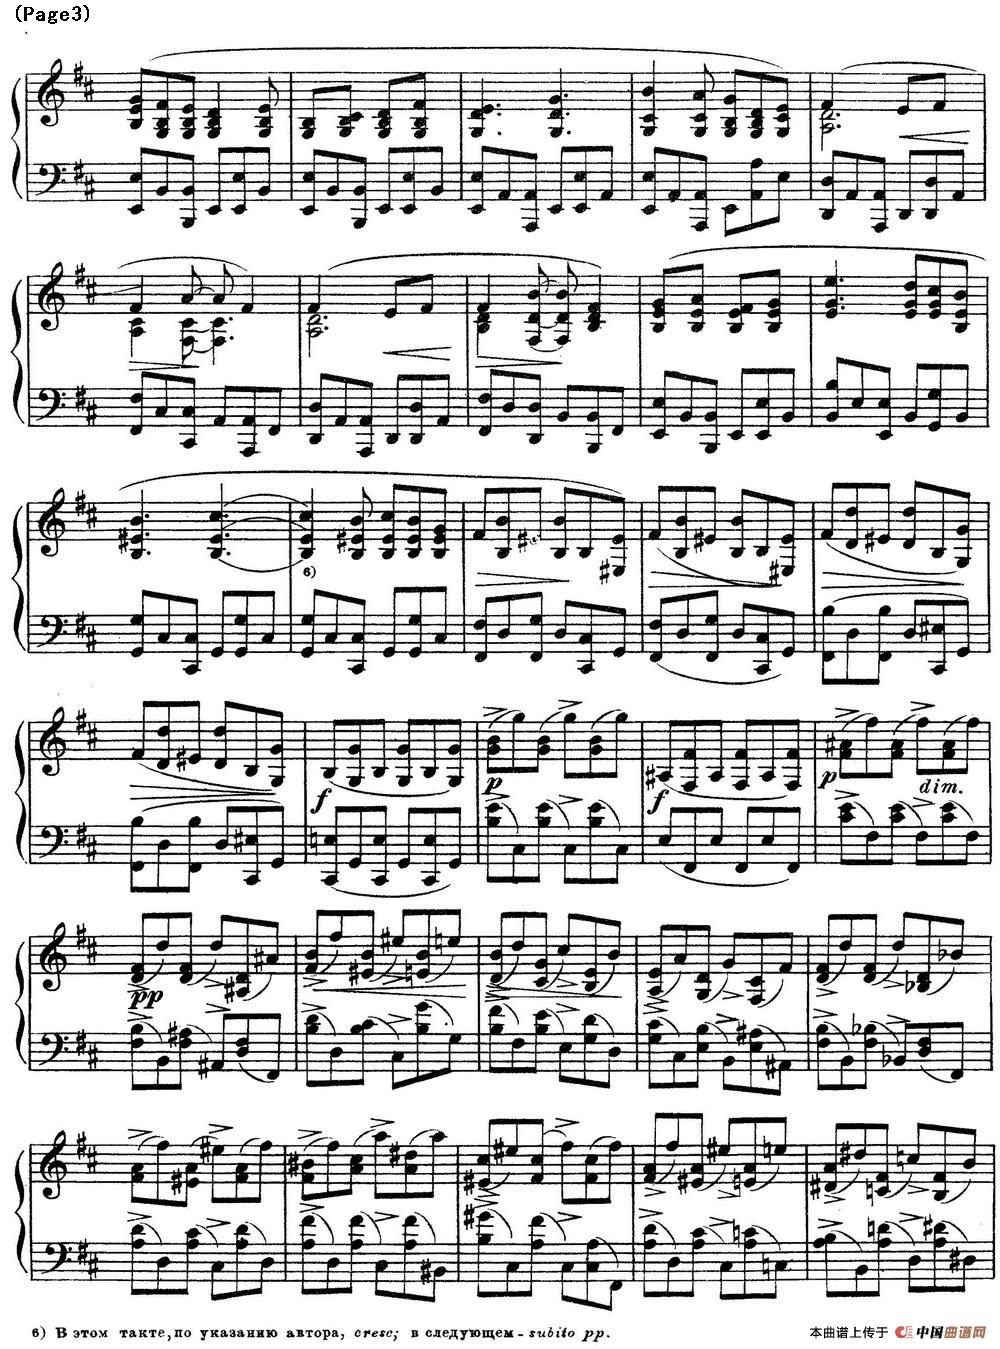 斯克里亚宾12首钢琴练习曲 Op8（No.3 Alexander Scriabin Etudes）(1)_Scriabin Etude Op.8 No.3_页面_3.jpg